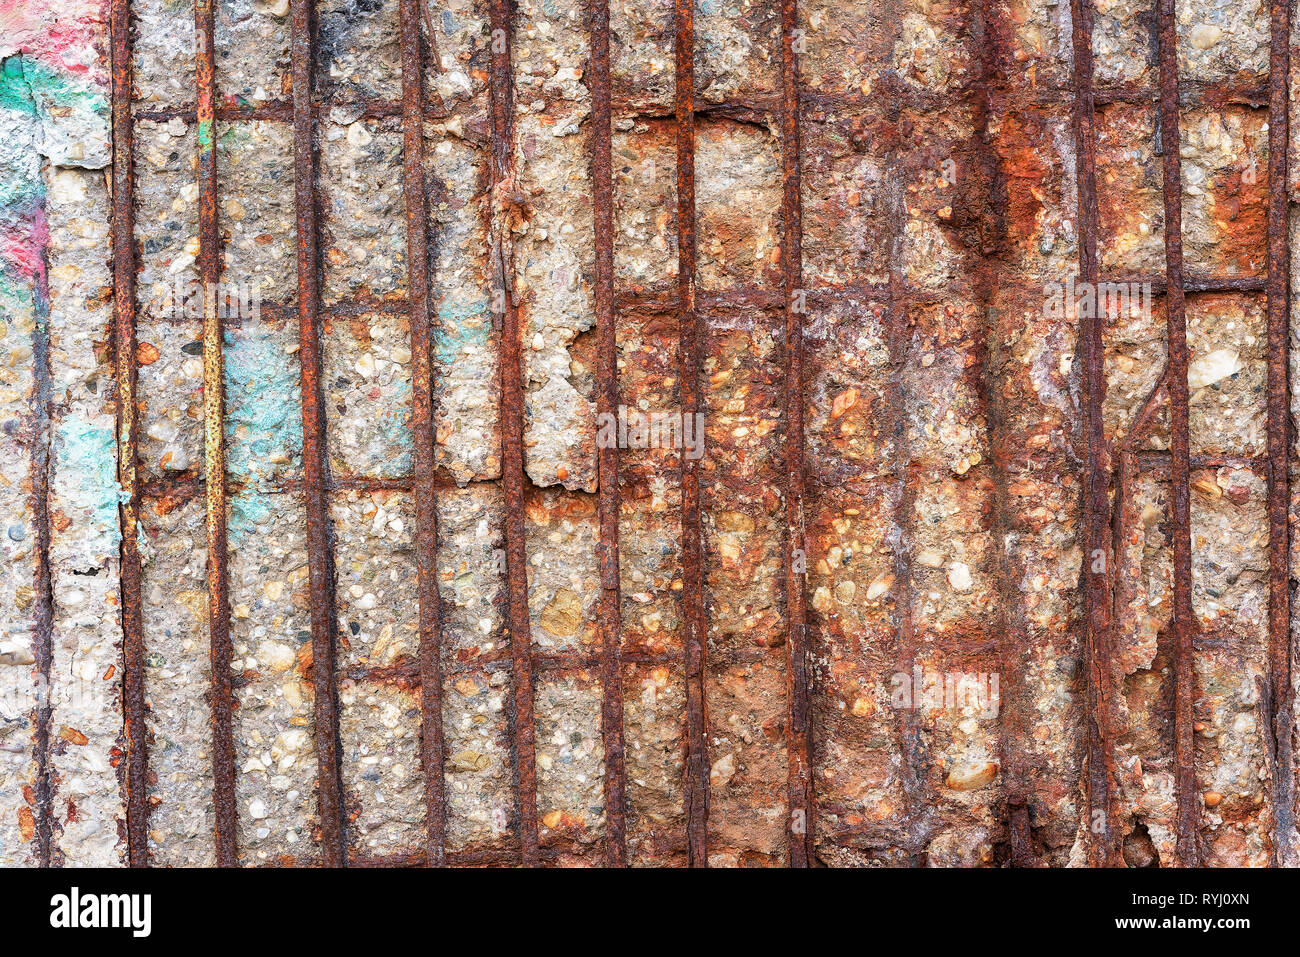 La corrosione e il decadimento della parete in cemento armato, grunge background urbano Foto Stock